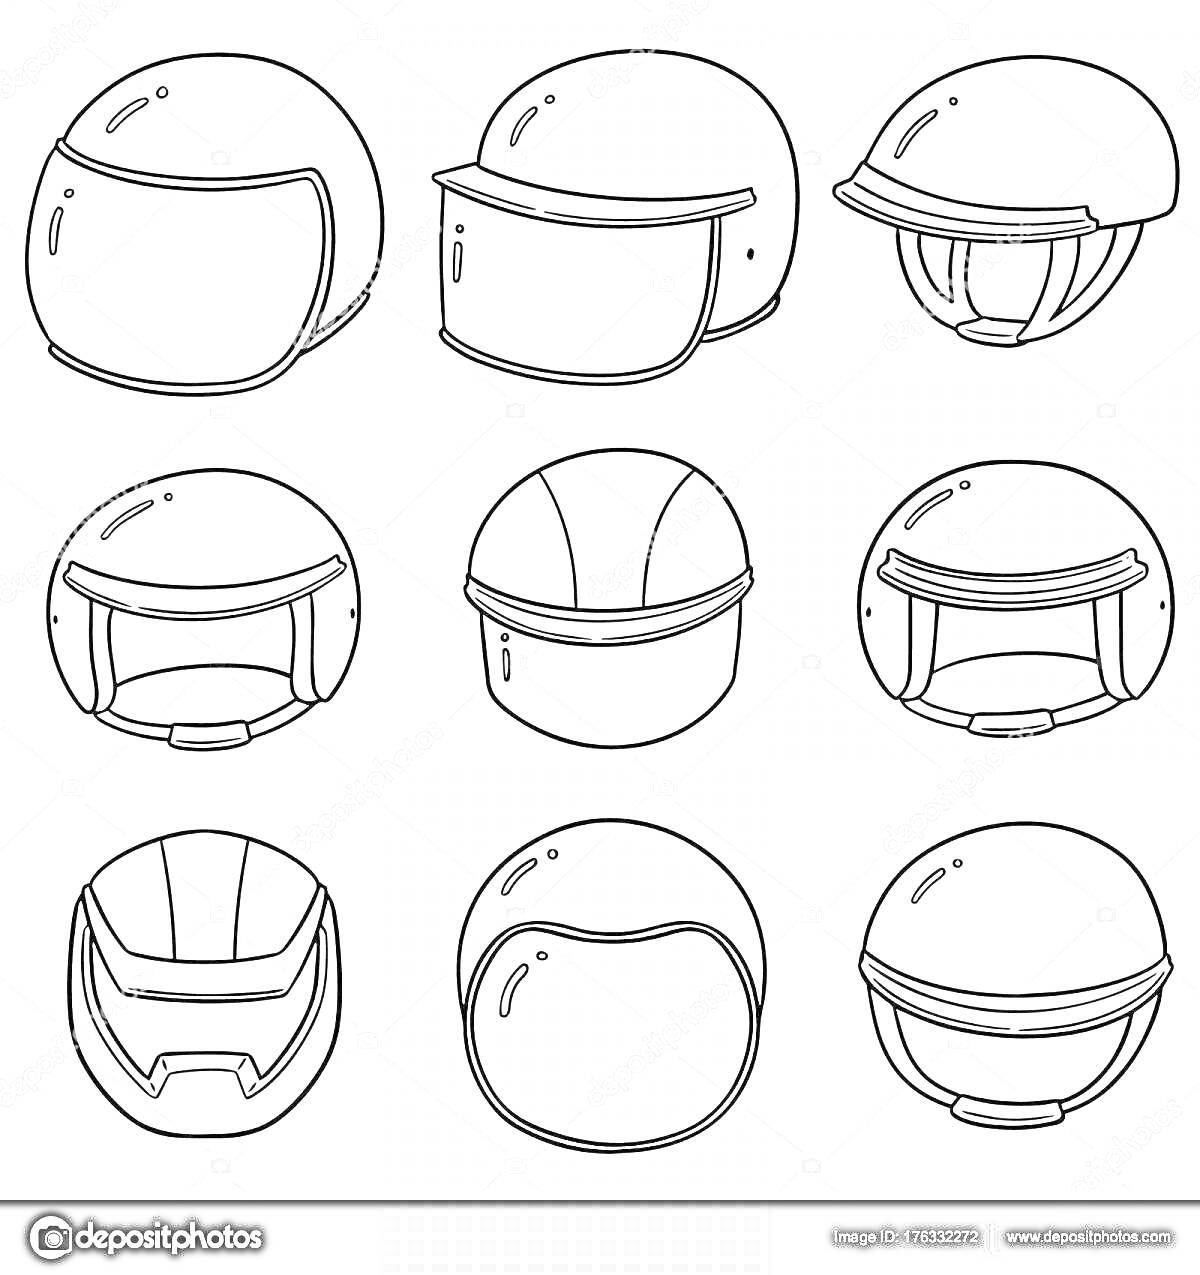 Раскраска Набор из девяти различных мотошлемов (мотоциклетных шлемов), в том числе с визорами и без, с разными формами и деталями.